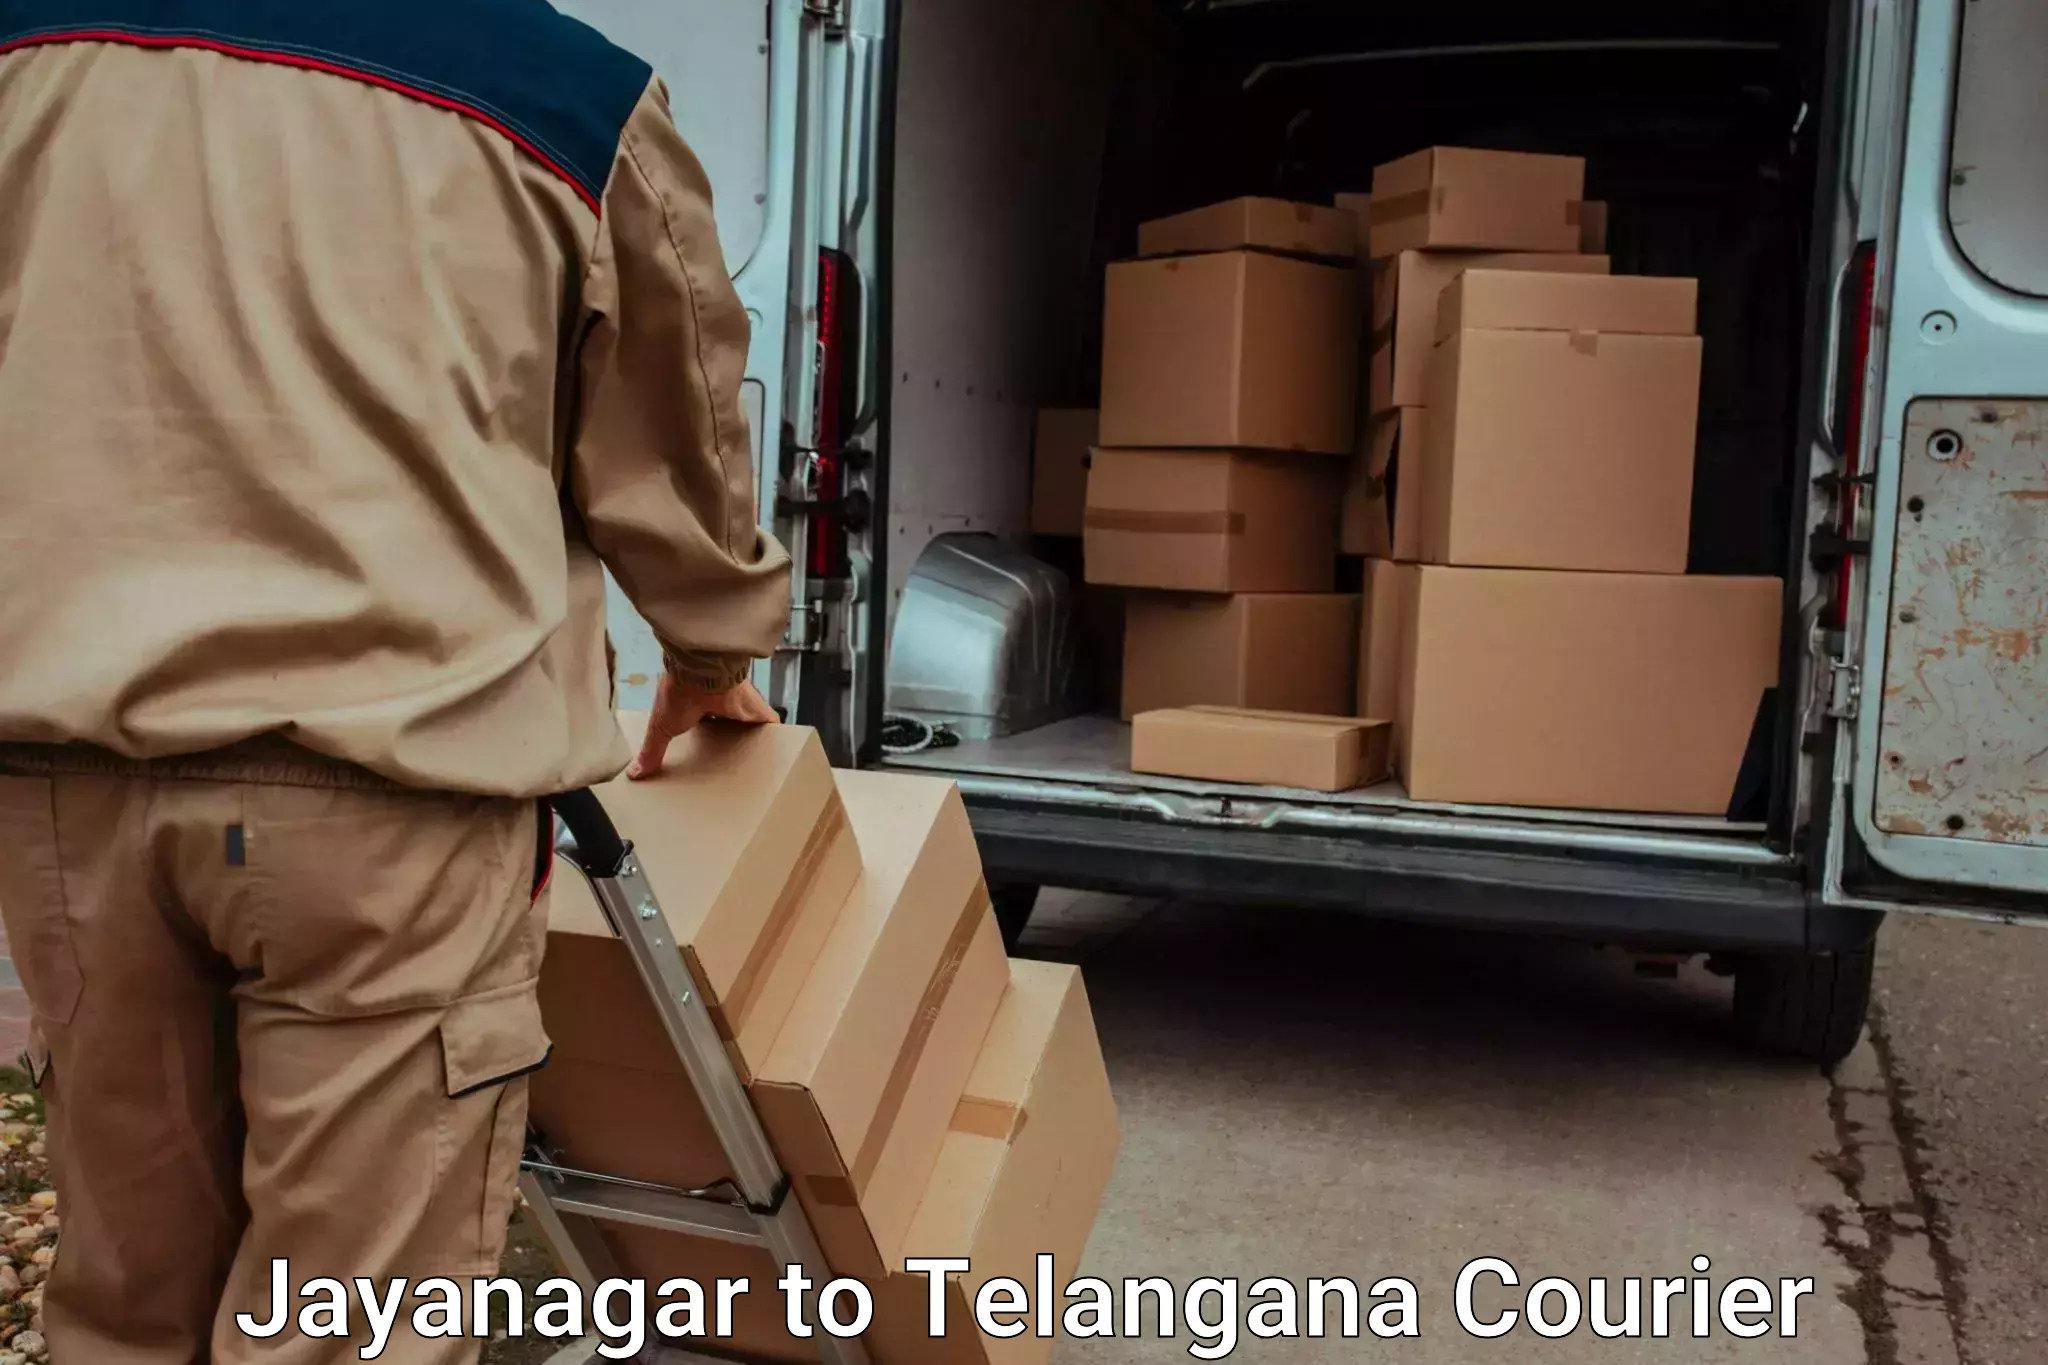 Baggage courier service Jayanagar to Peddapalli